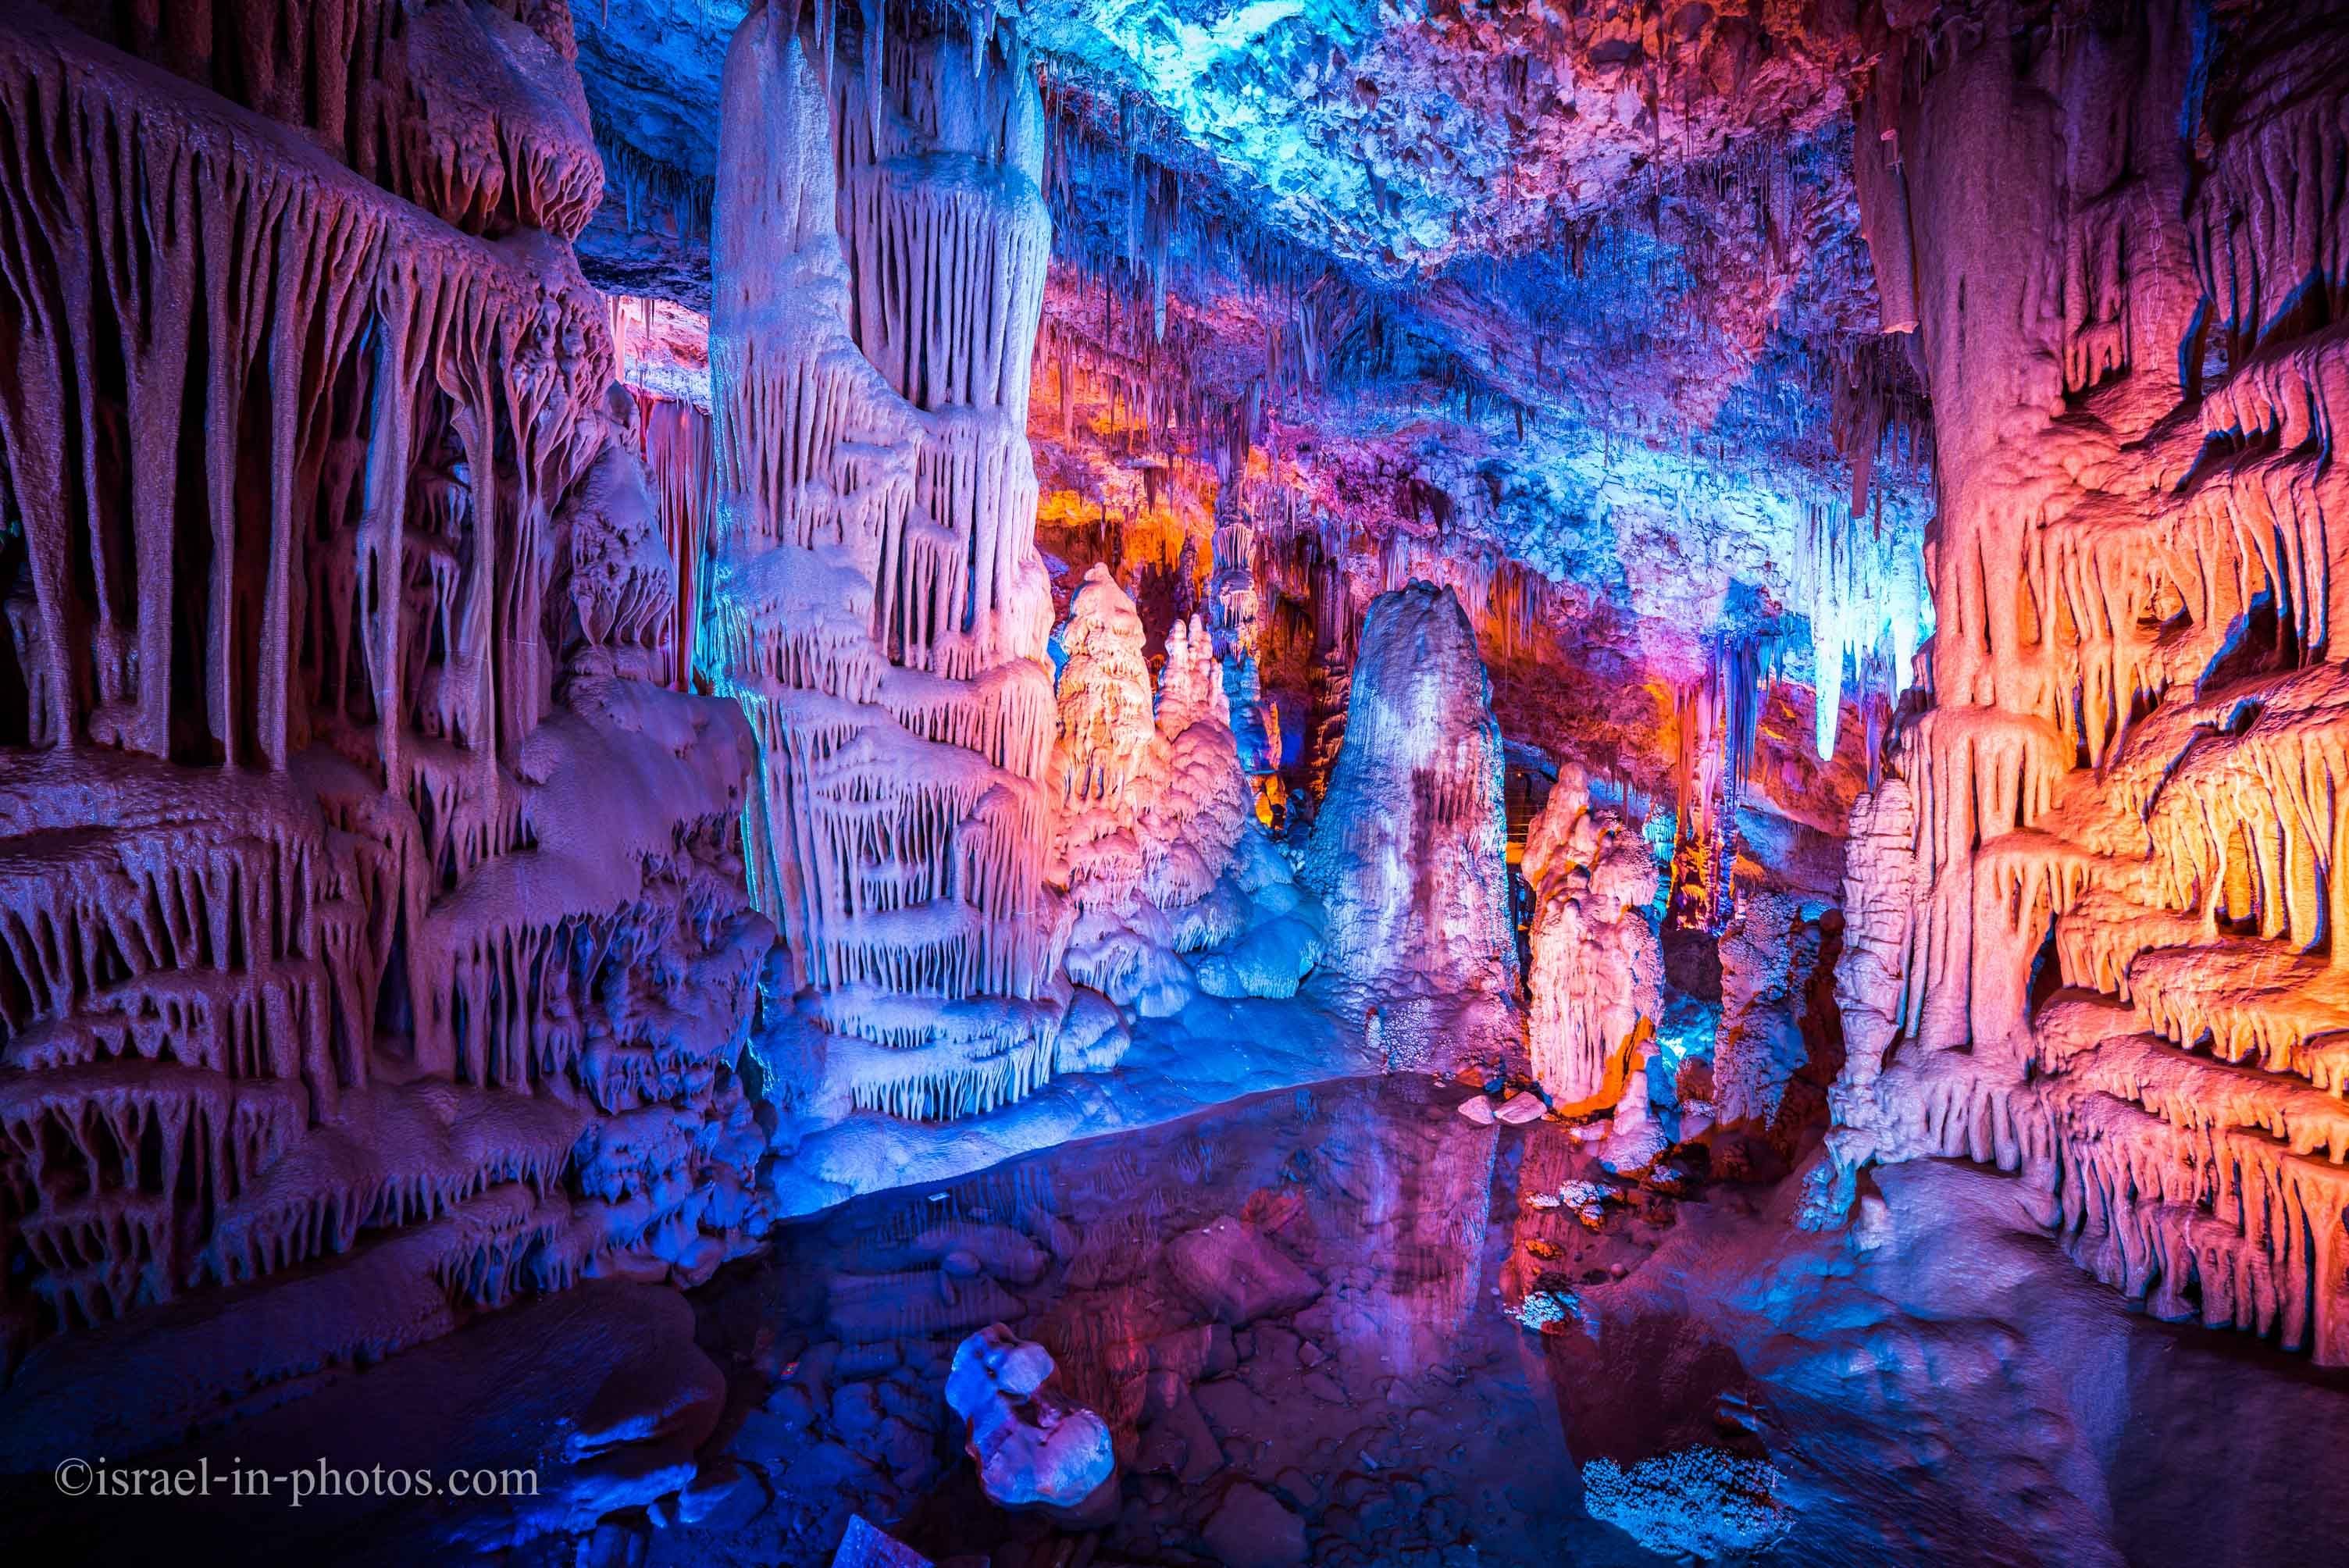 Кунгурская Ледяная пещера сталактиты